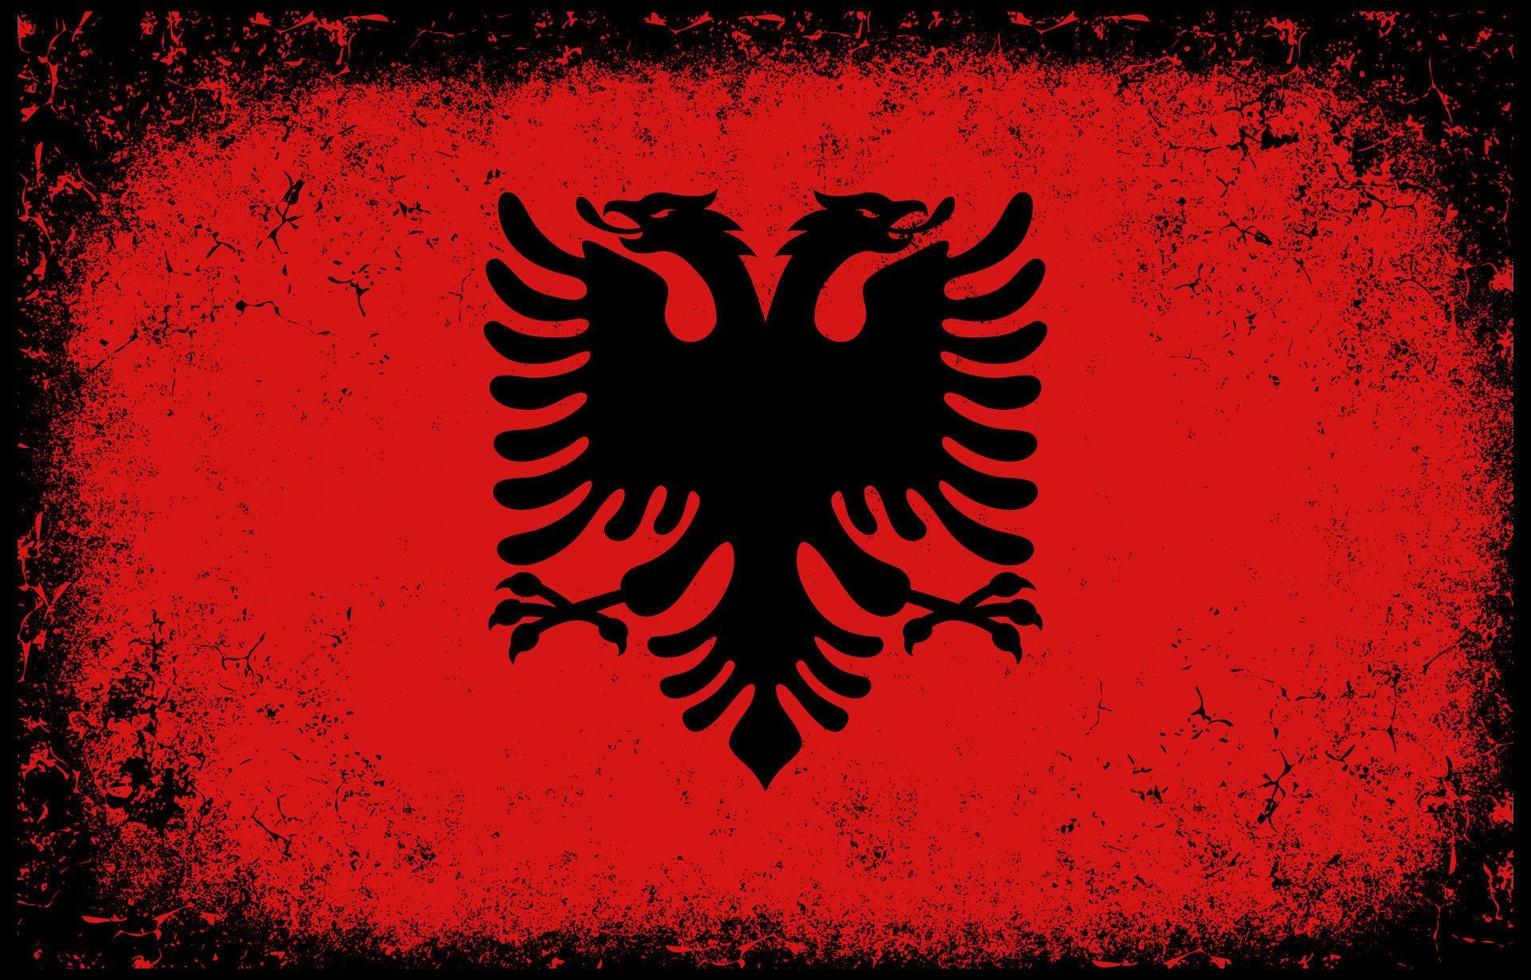 viejo sucio grunge vintage albania bandera nacional ilustración vector